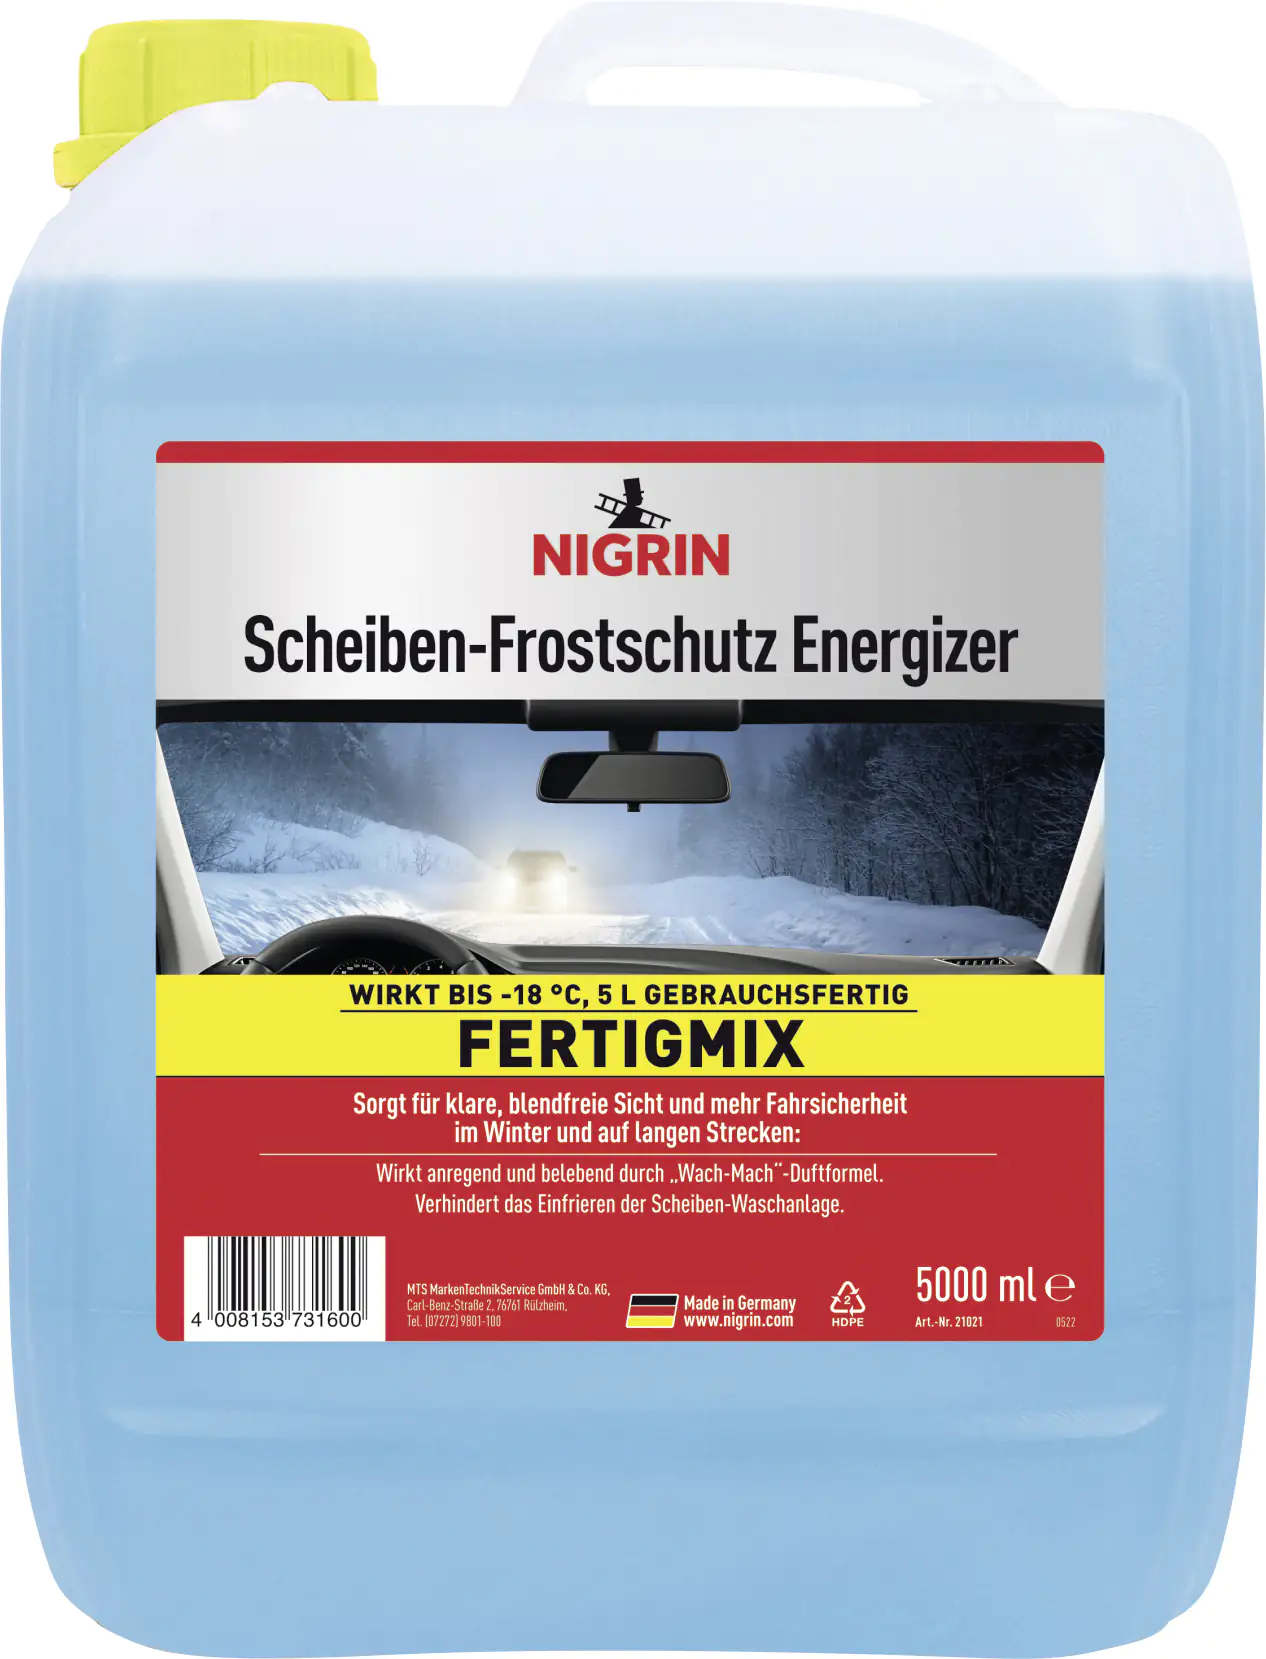 Nigrin Scheibenfrostschutz Energizer Fertigmix -18°C 5L kaufen